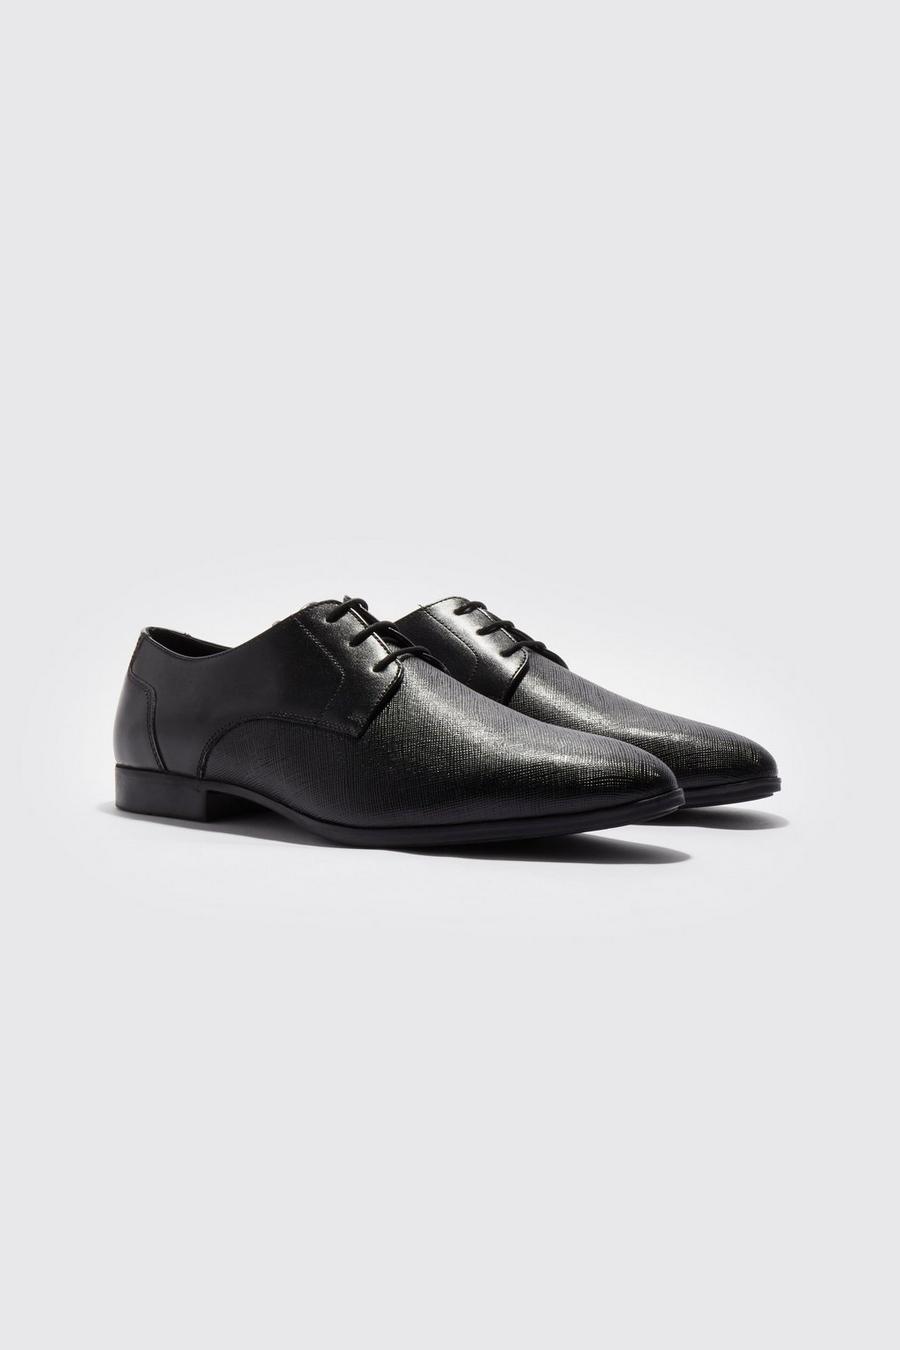 Zapatos elegante en relieve, Black negro